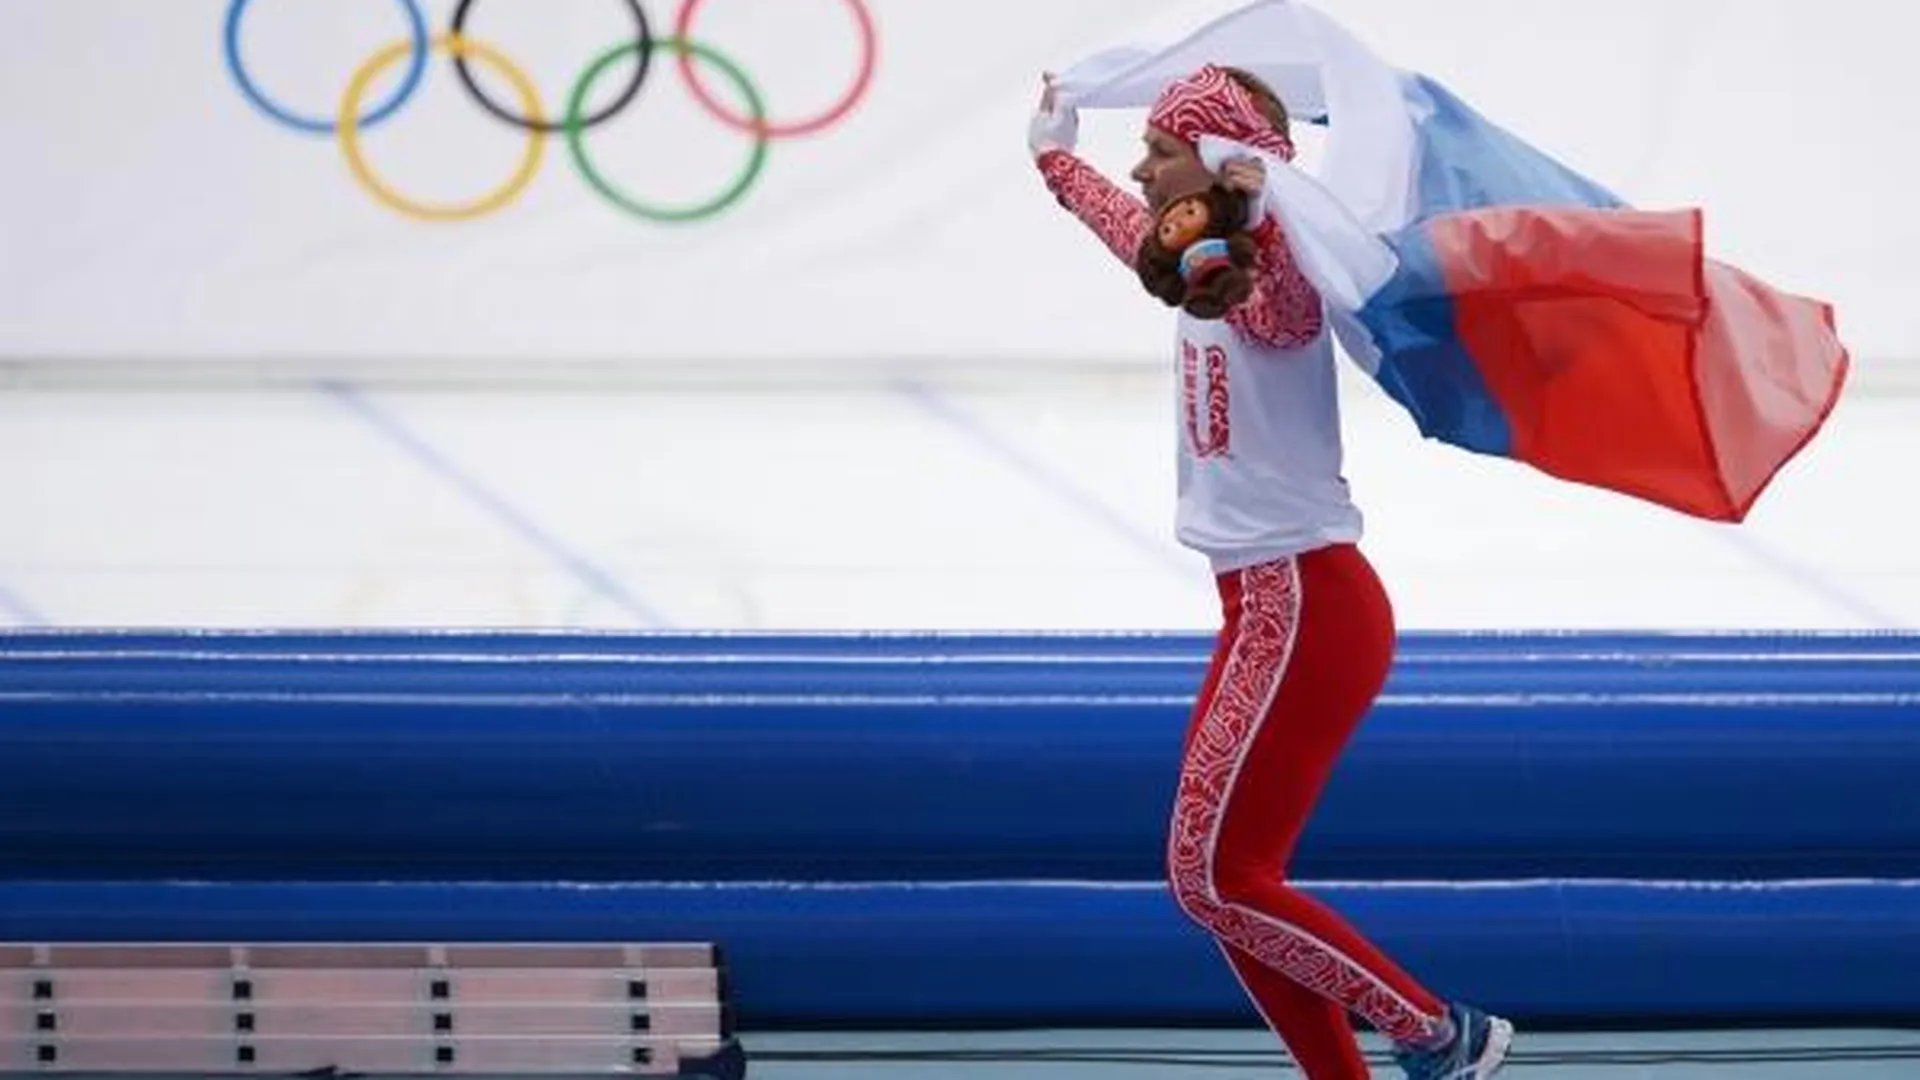 Ольга Граф (Россия), занявшая третье место на дистанции в забеге на 3000 метров в соревнованиях по конькобежному спорту среди женщин на XXII зимних Олимпийских играх в Сочи